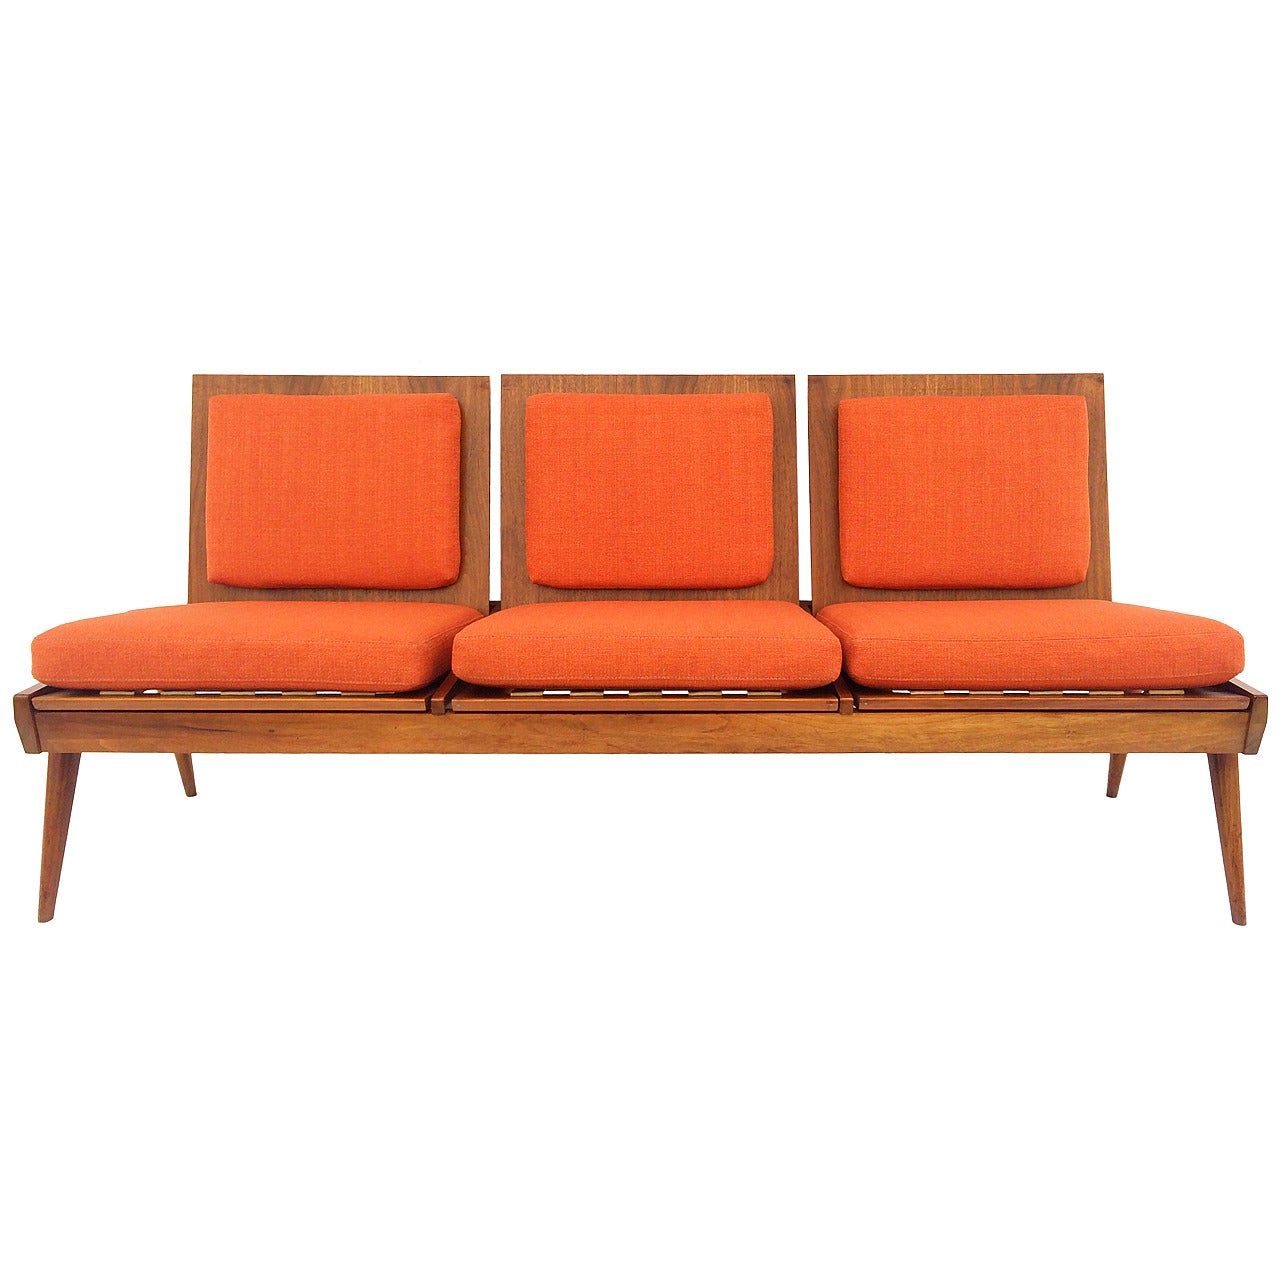 Rare Brown Saltman Convertible Sofa